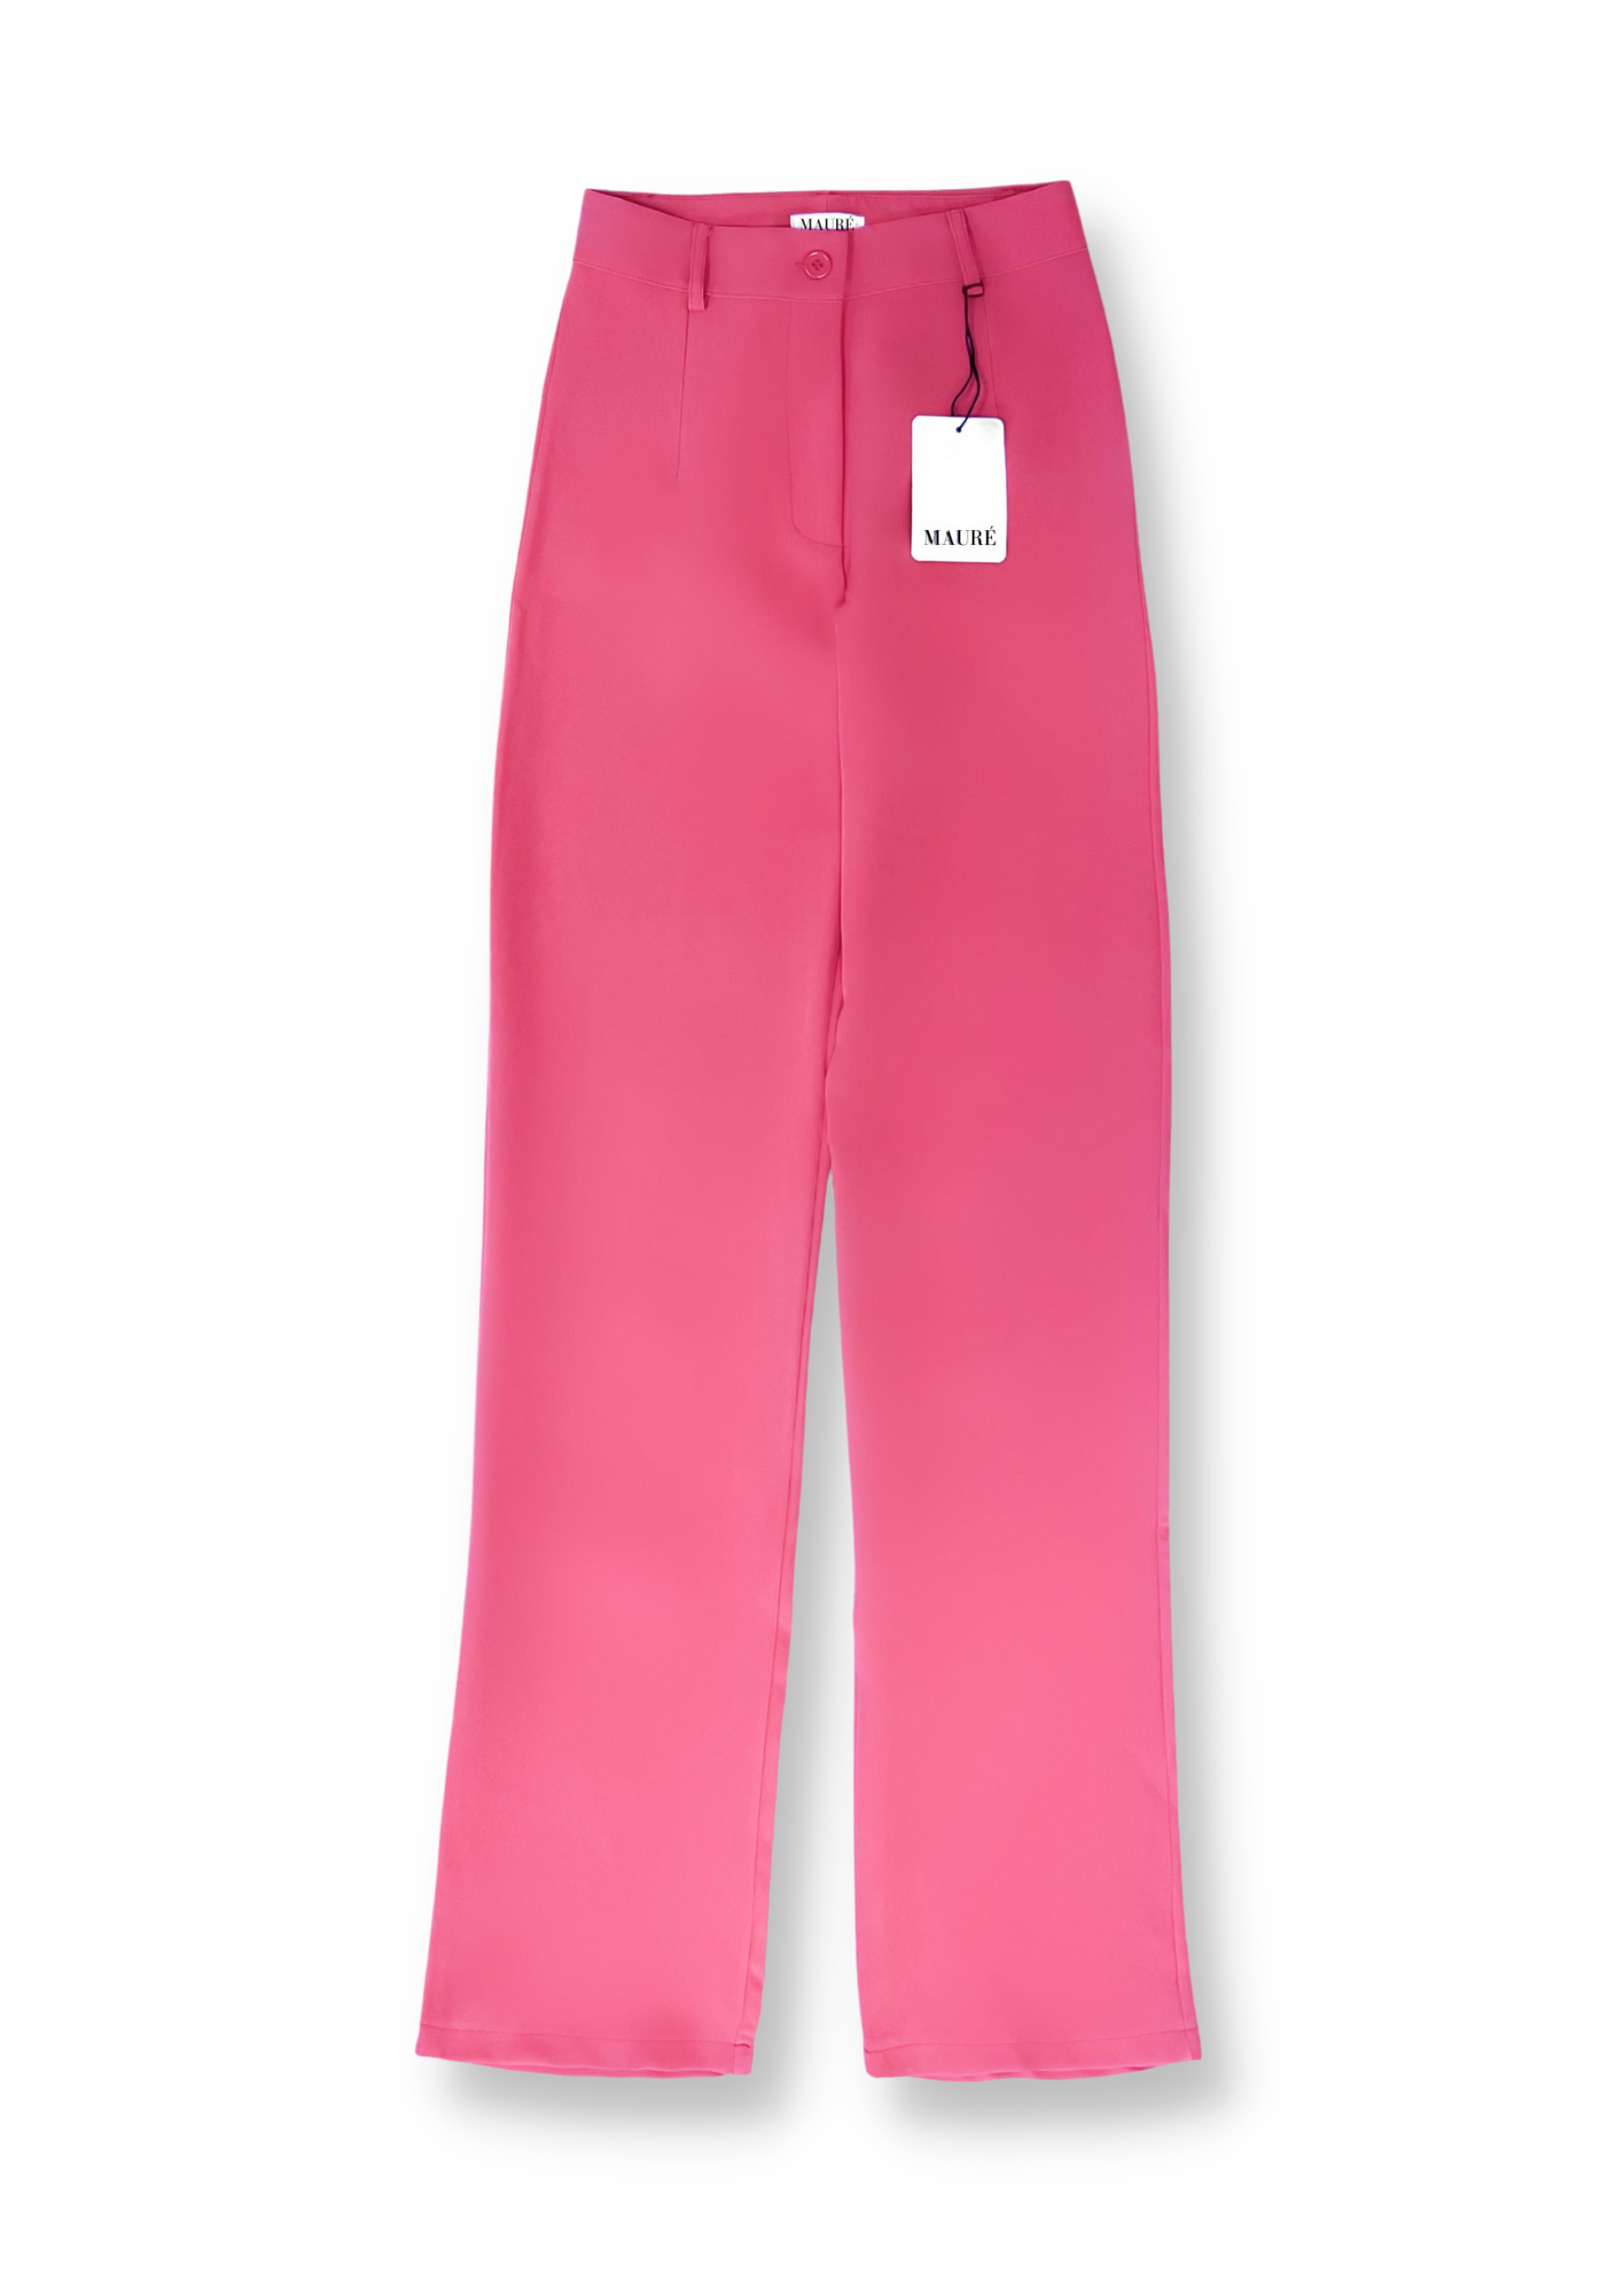 Pantalon droit classique assez rose (REGULAR)